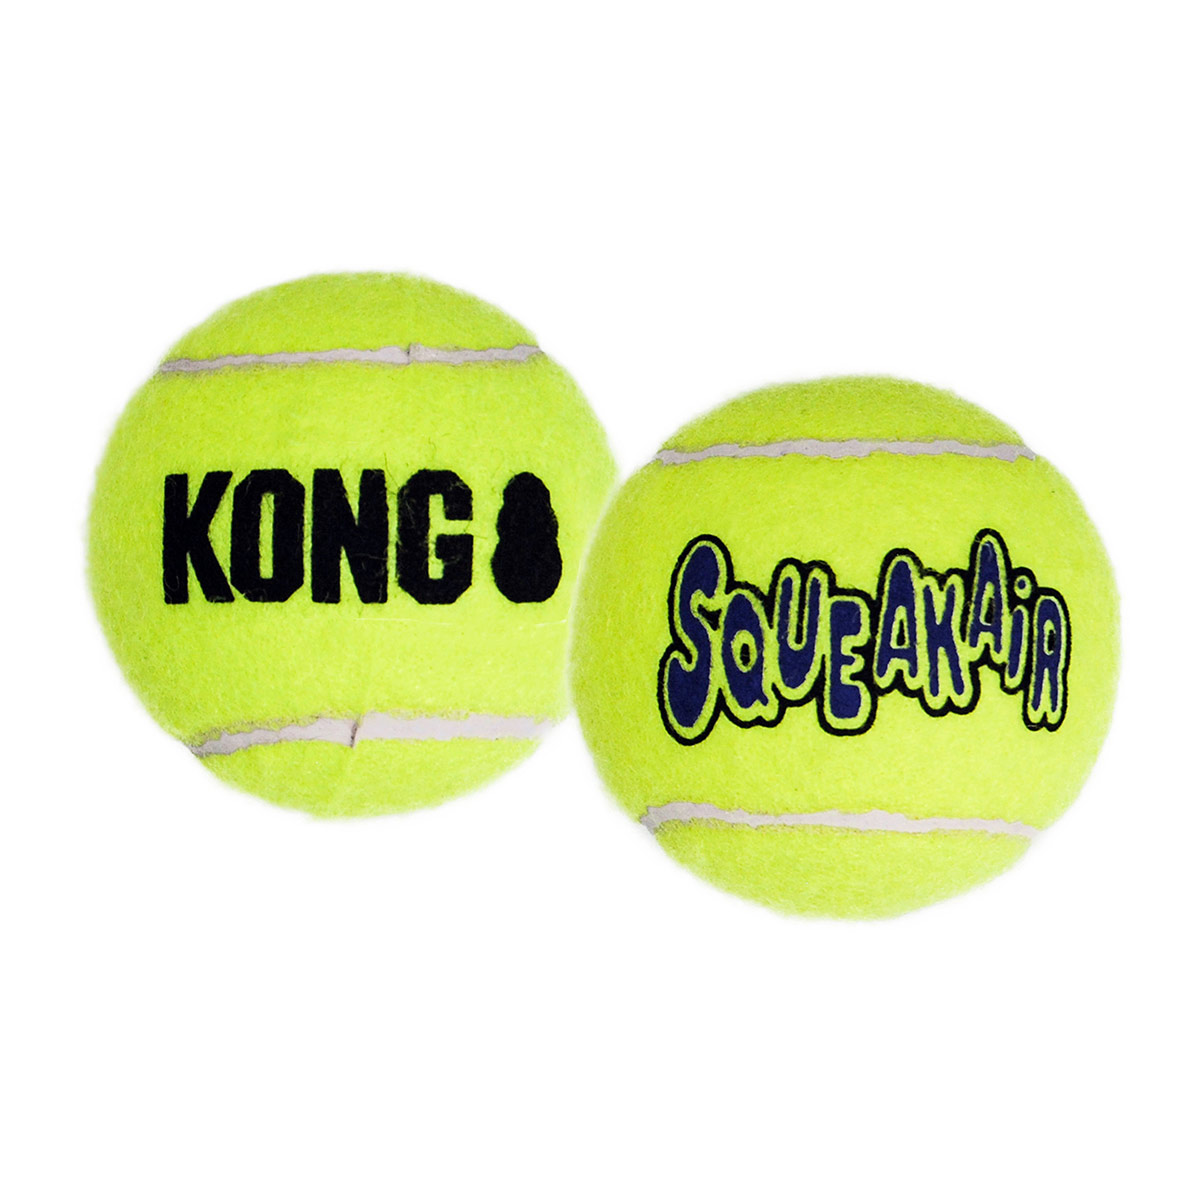 kong airdog squeakair ball 3 stk web 1